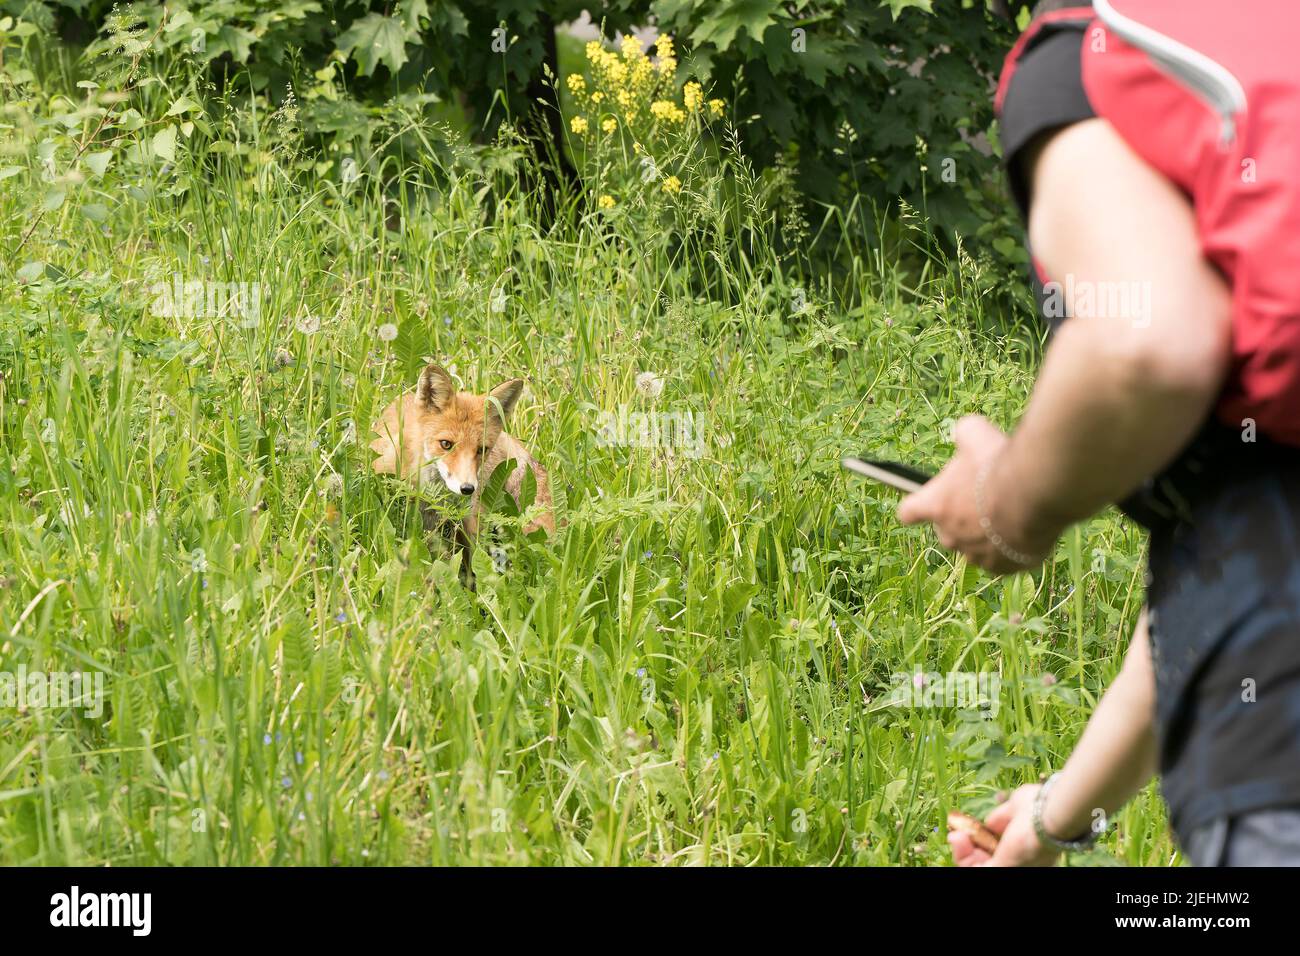 Renard sauvage dans un parc public. Un homme essaie de nourrir un renard timide. Alimentation et vie des animaux sauvages. Photo de haute qualité Banque D'Images